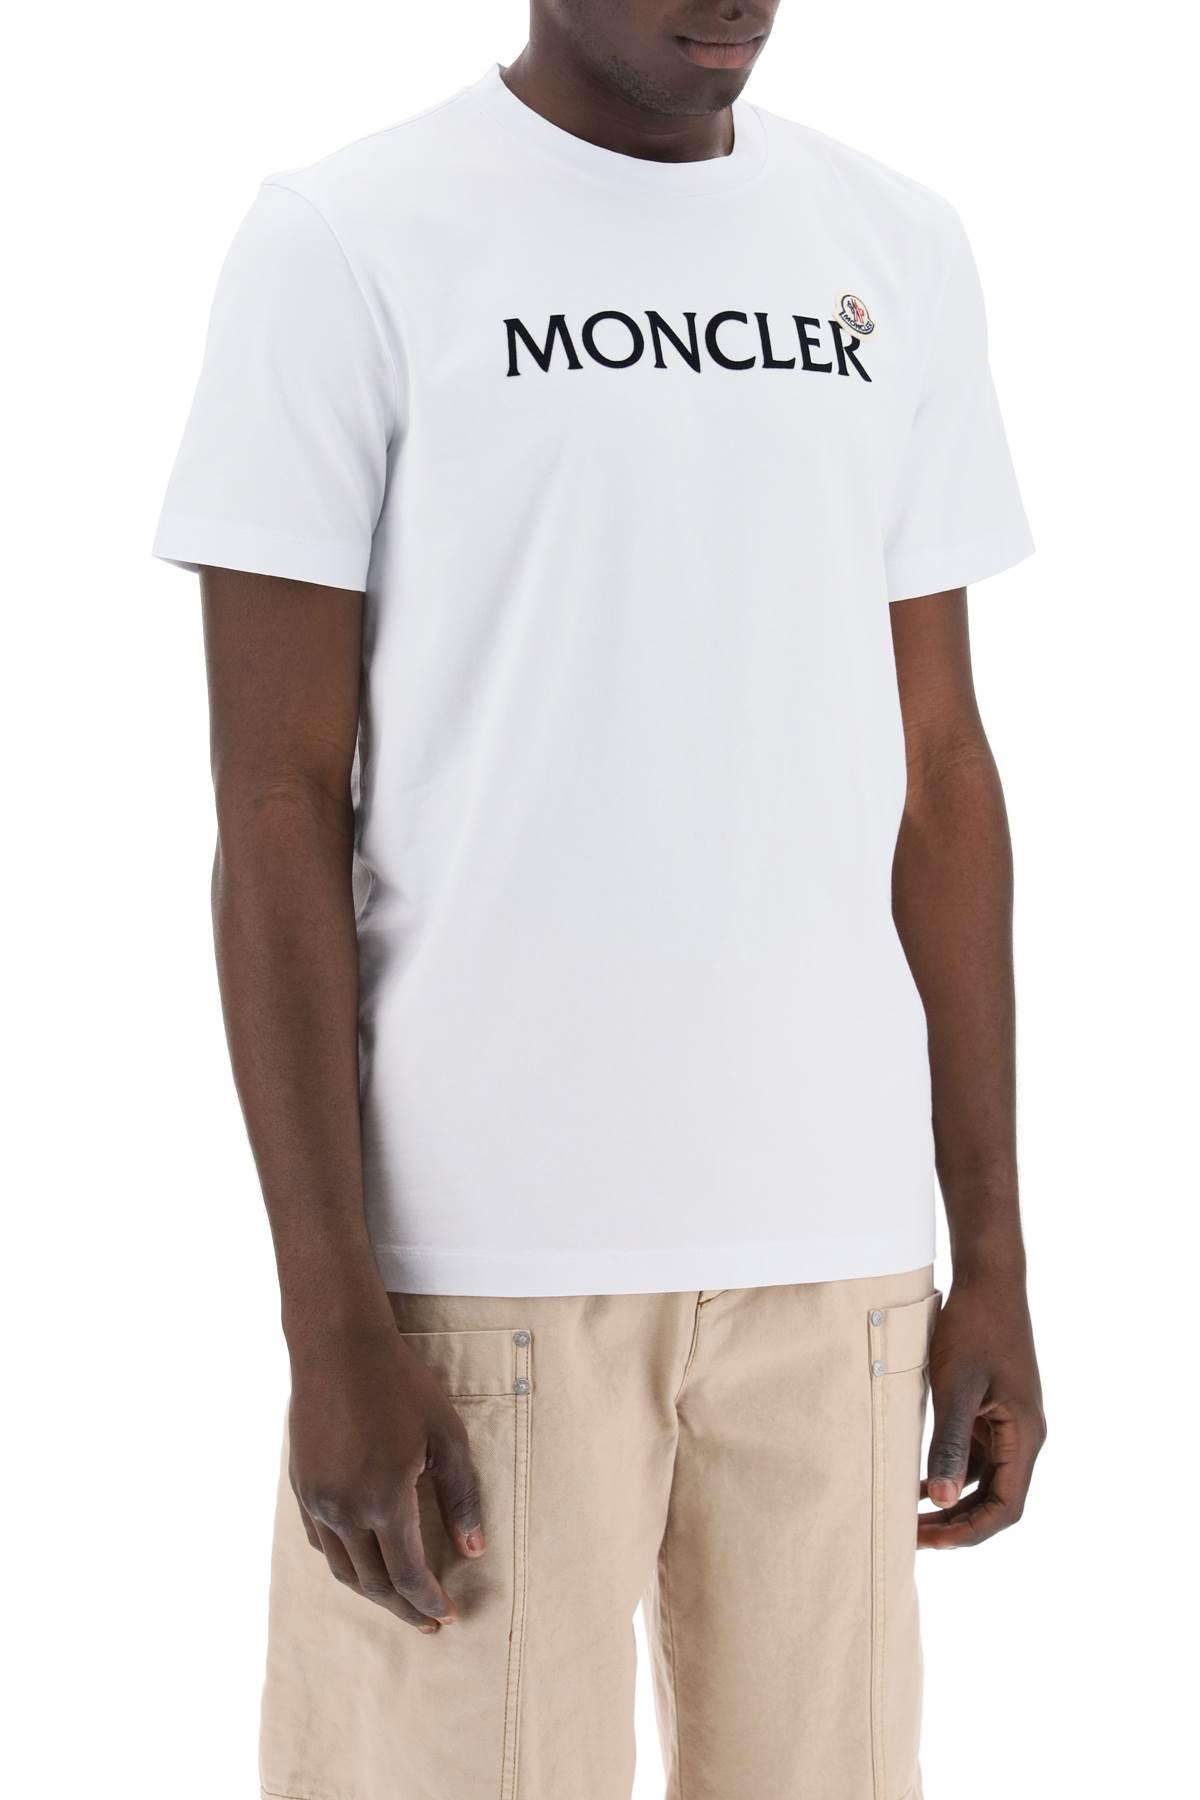 Moncler MONCLER T-shirt with flock print